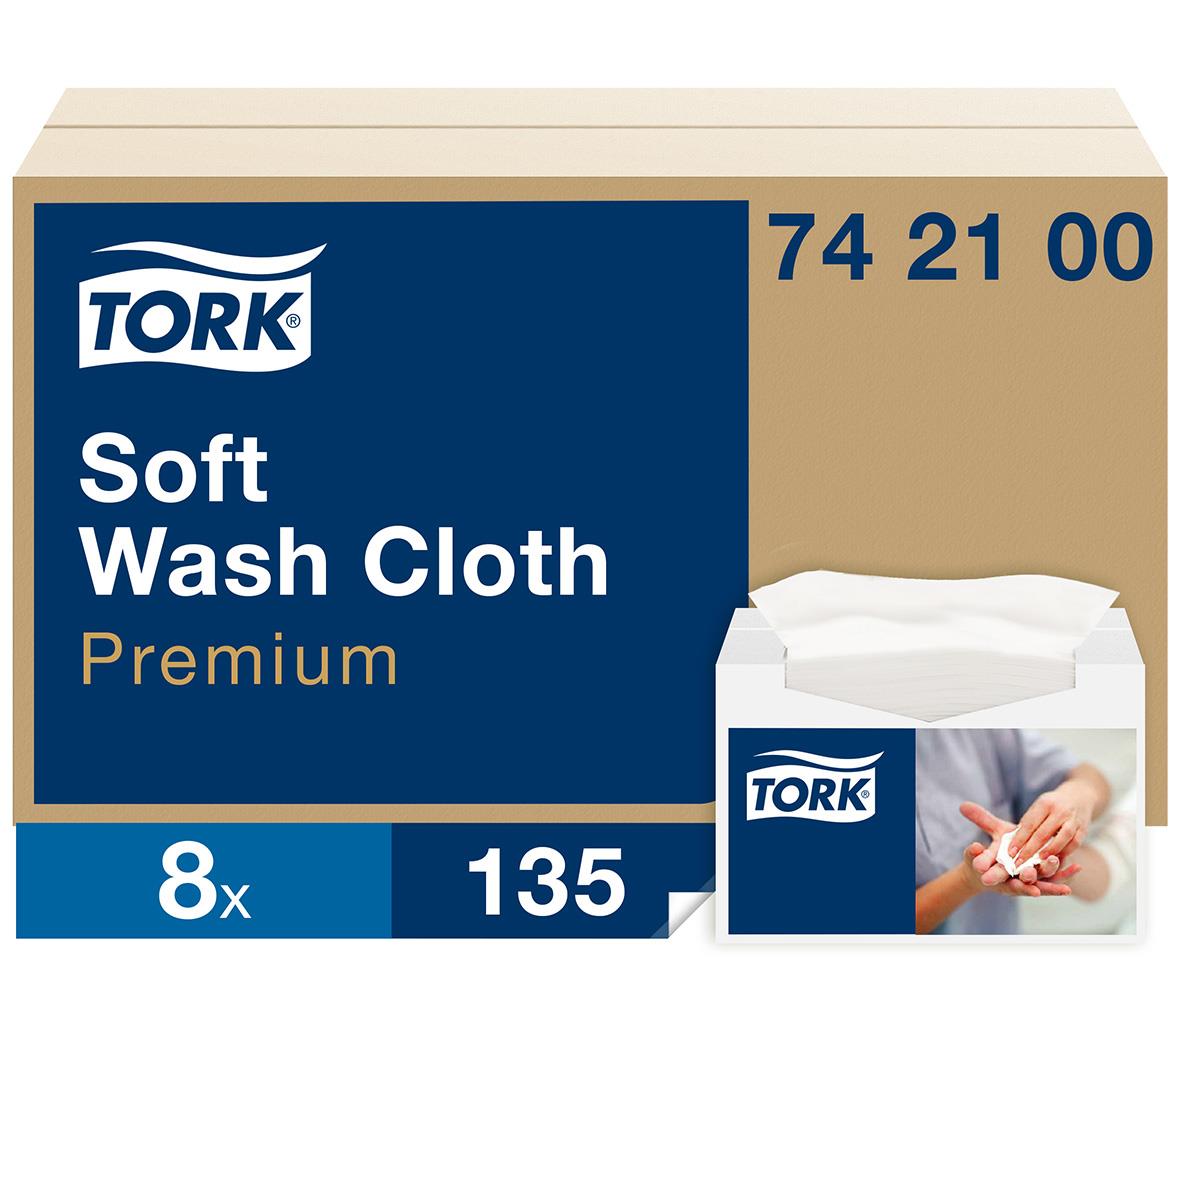 Tvättlapp Tork Premium 1-lag Vit 30x19cm